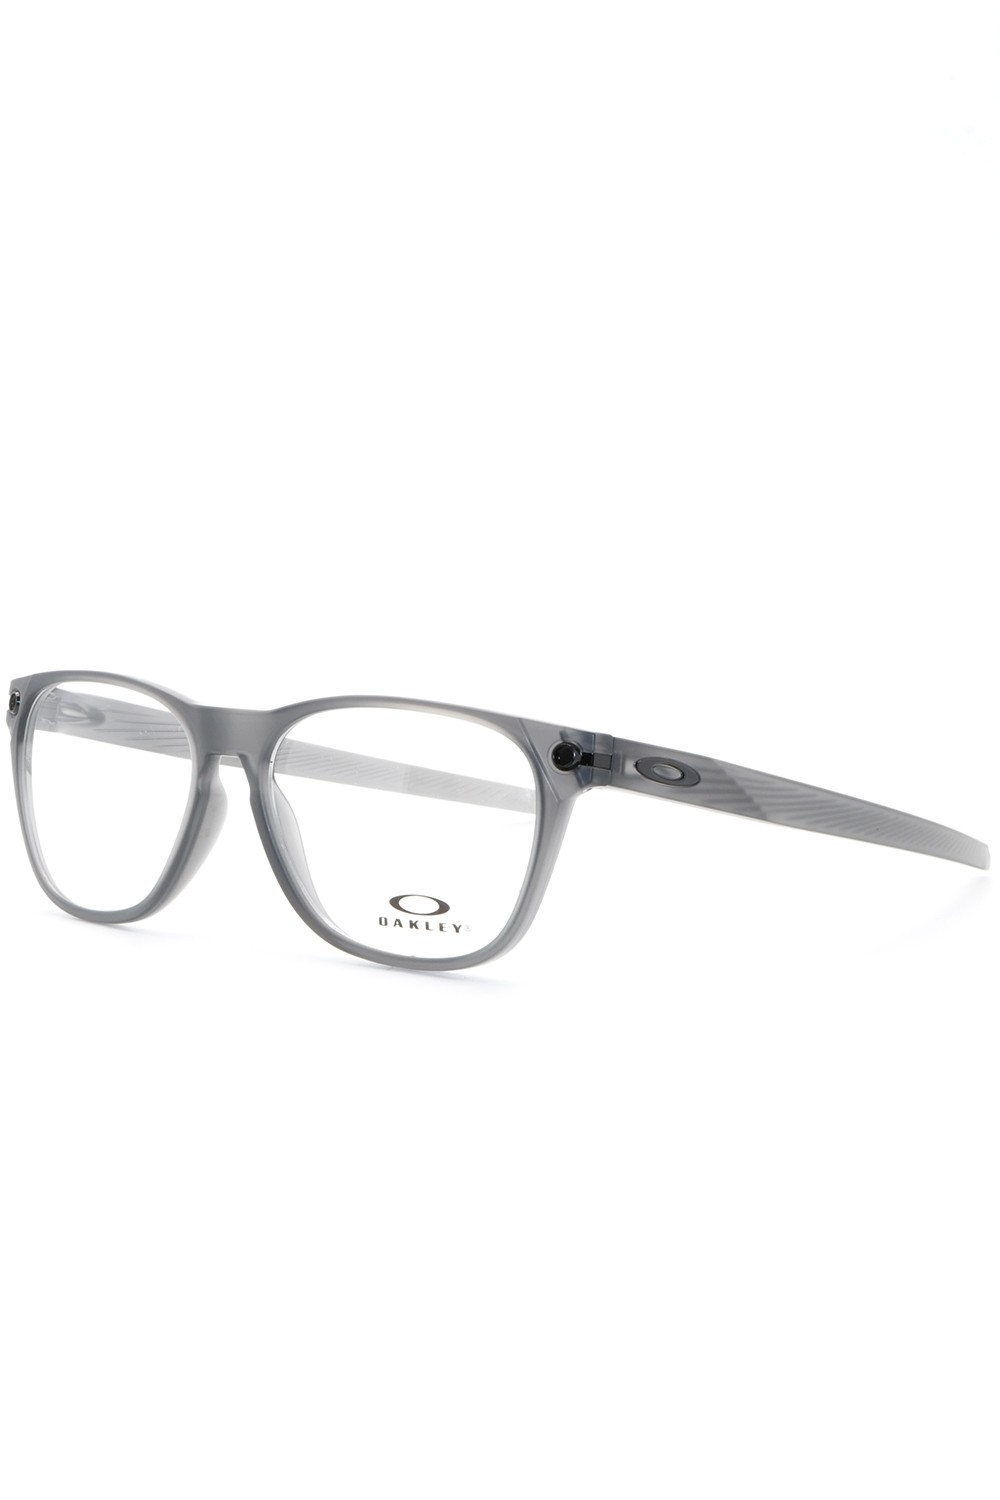 Oakley - Occhiali da vista sportivi squadrati per uomo grigio - OX8177 0254